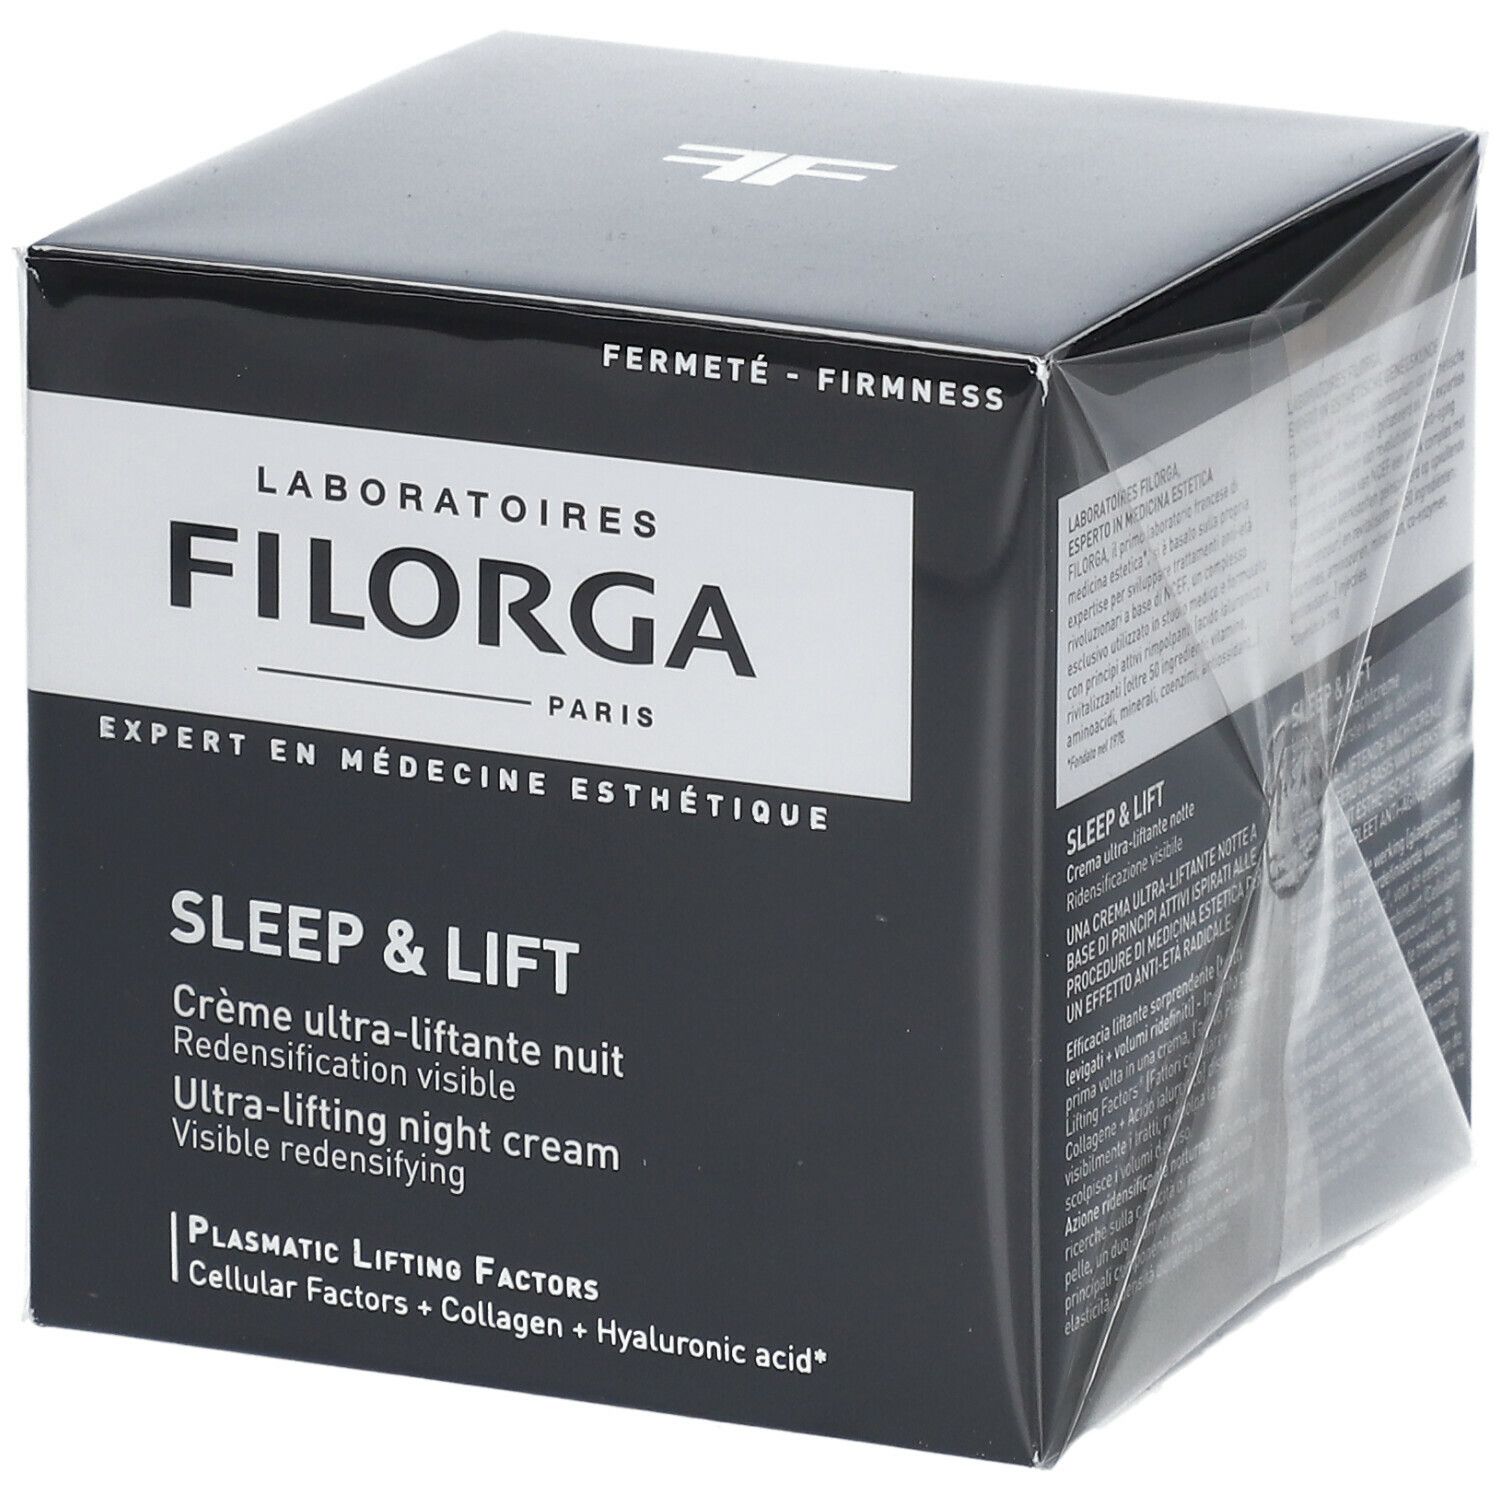 FILORGA SLEEP & LIFT